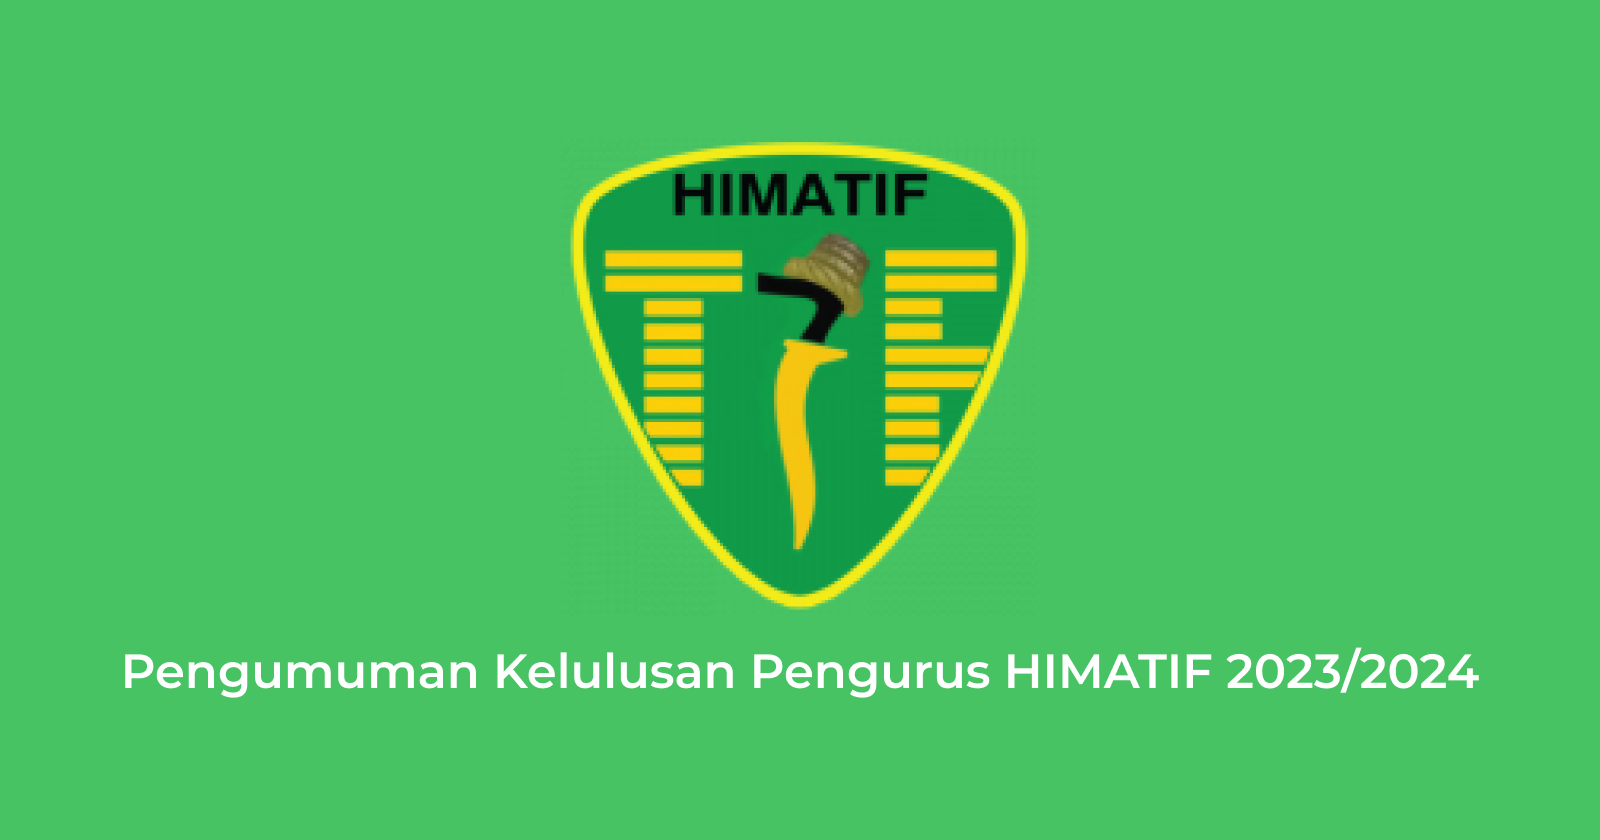 Pengumuman Kelulusan Pengurus HIMATIF 2023/2024